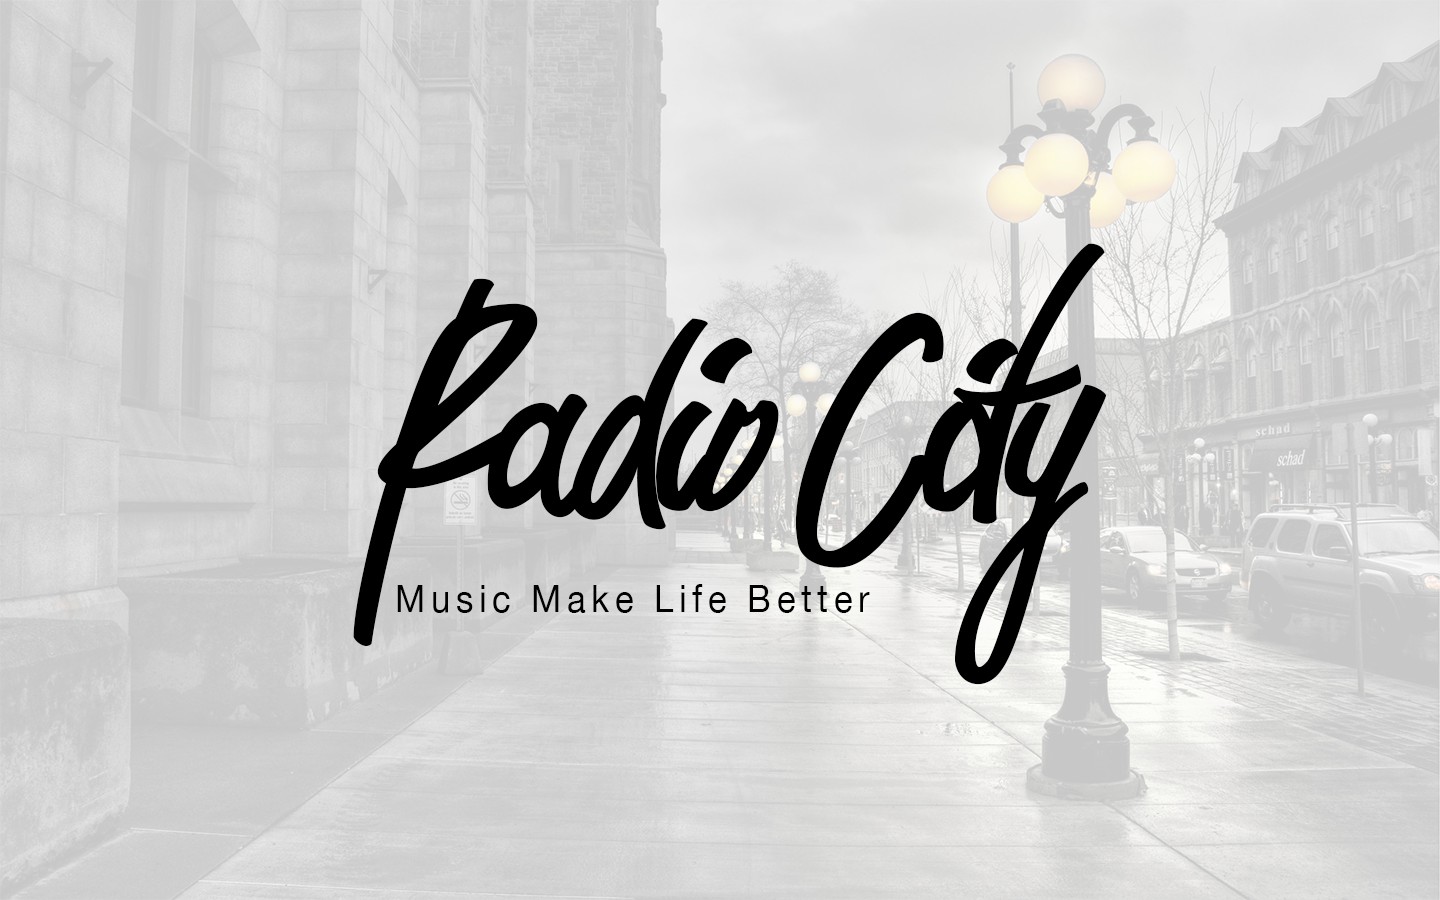 City life музыка